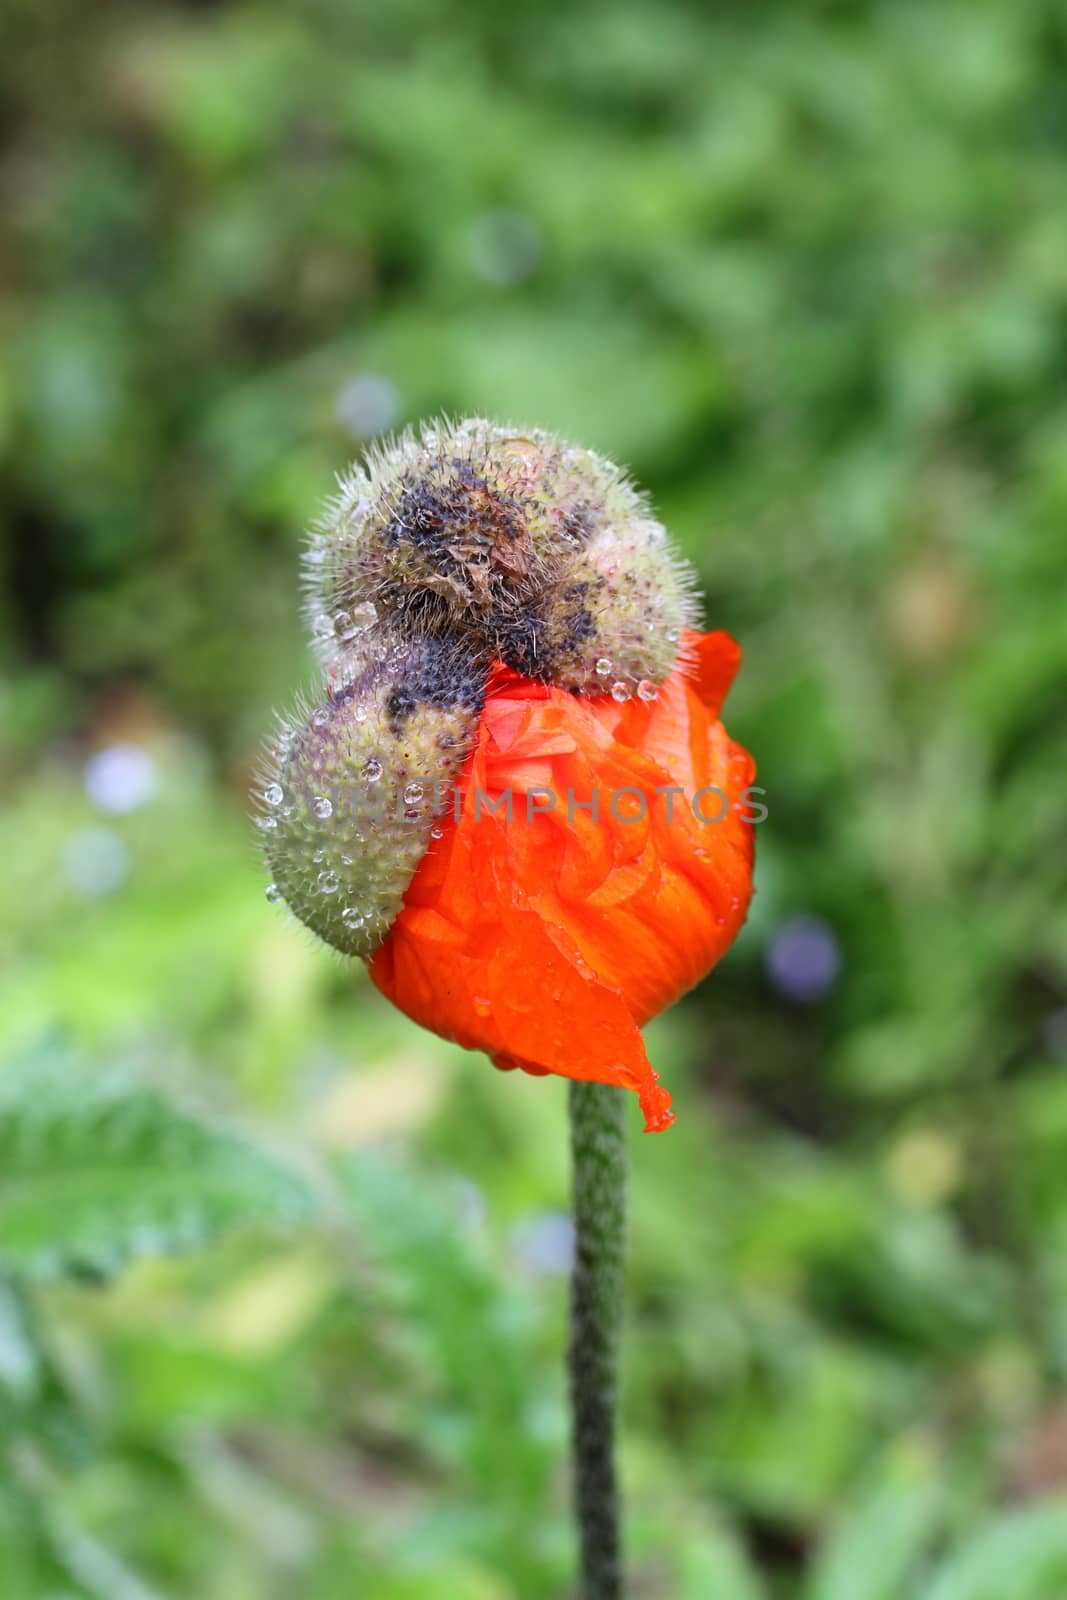 Poppy bud bursting out